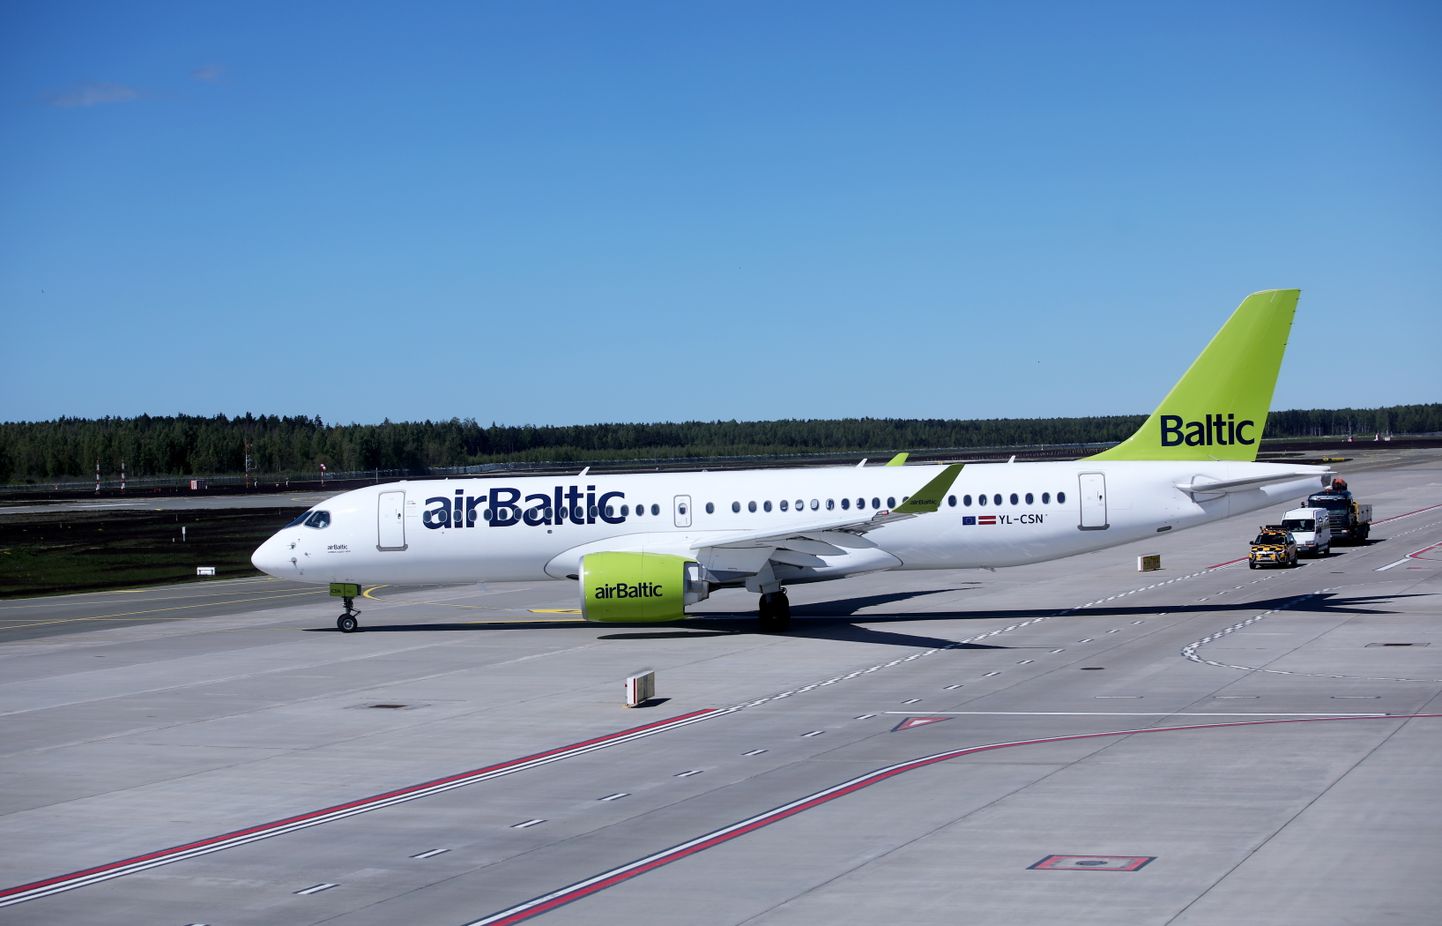 Lidsabiedrības "airBaltic" lidmašīna starptautiskajā lidostā "Rīga". Ilustratīvs foto.